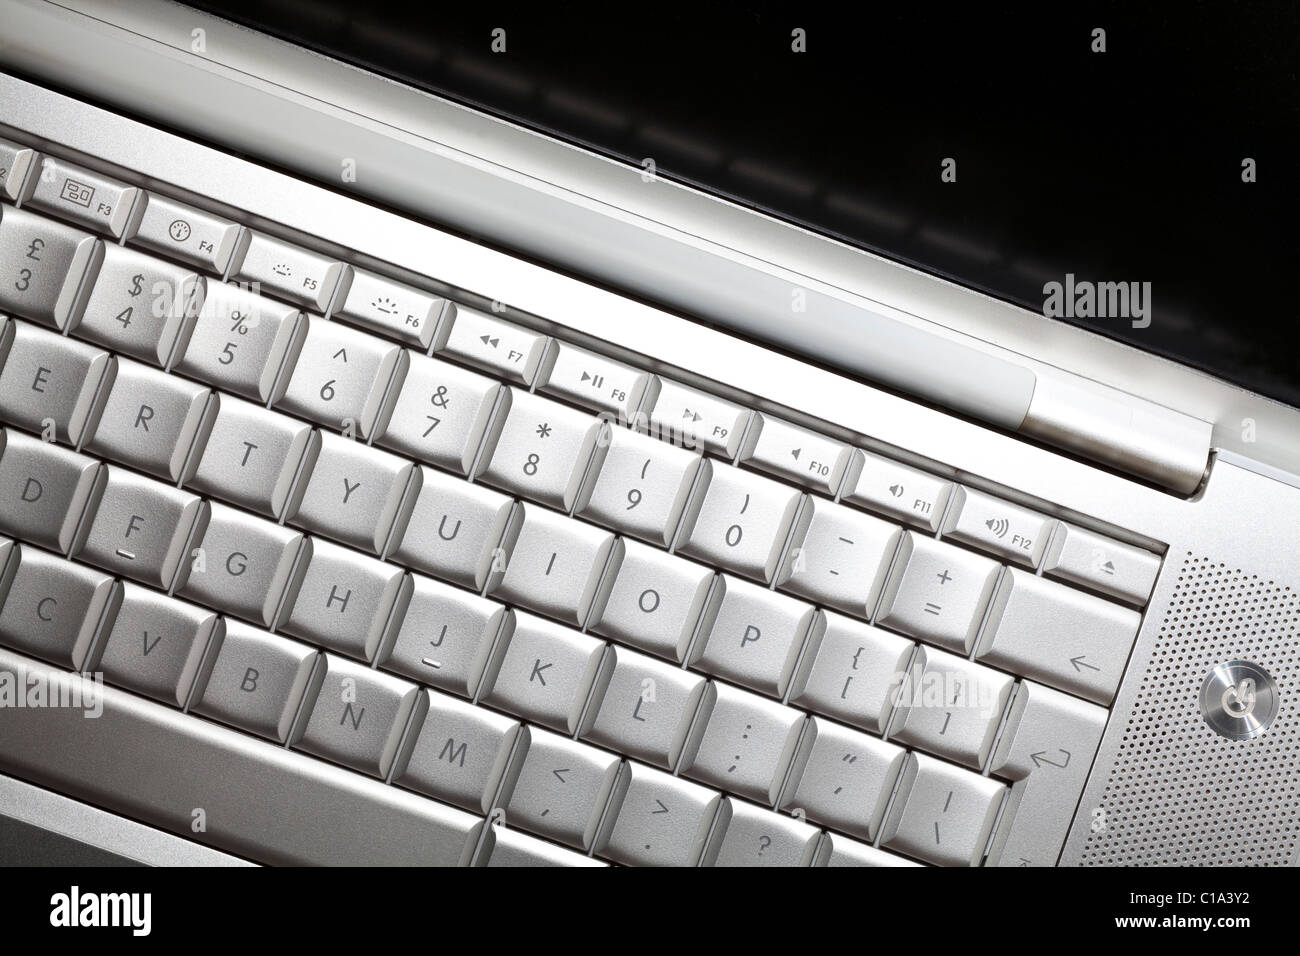 Clavier ordinateur portable Banque D'Images